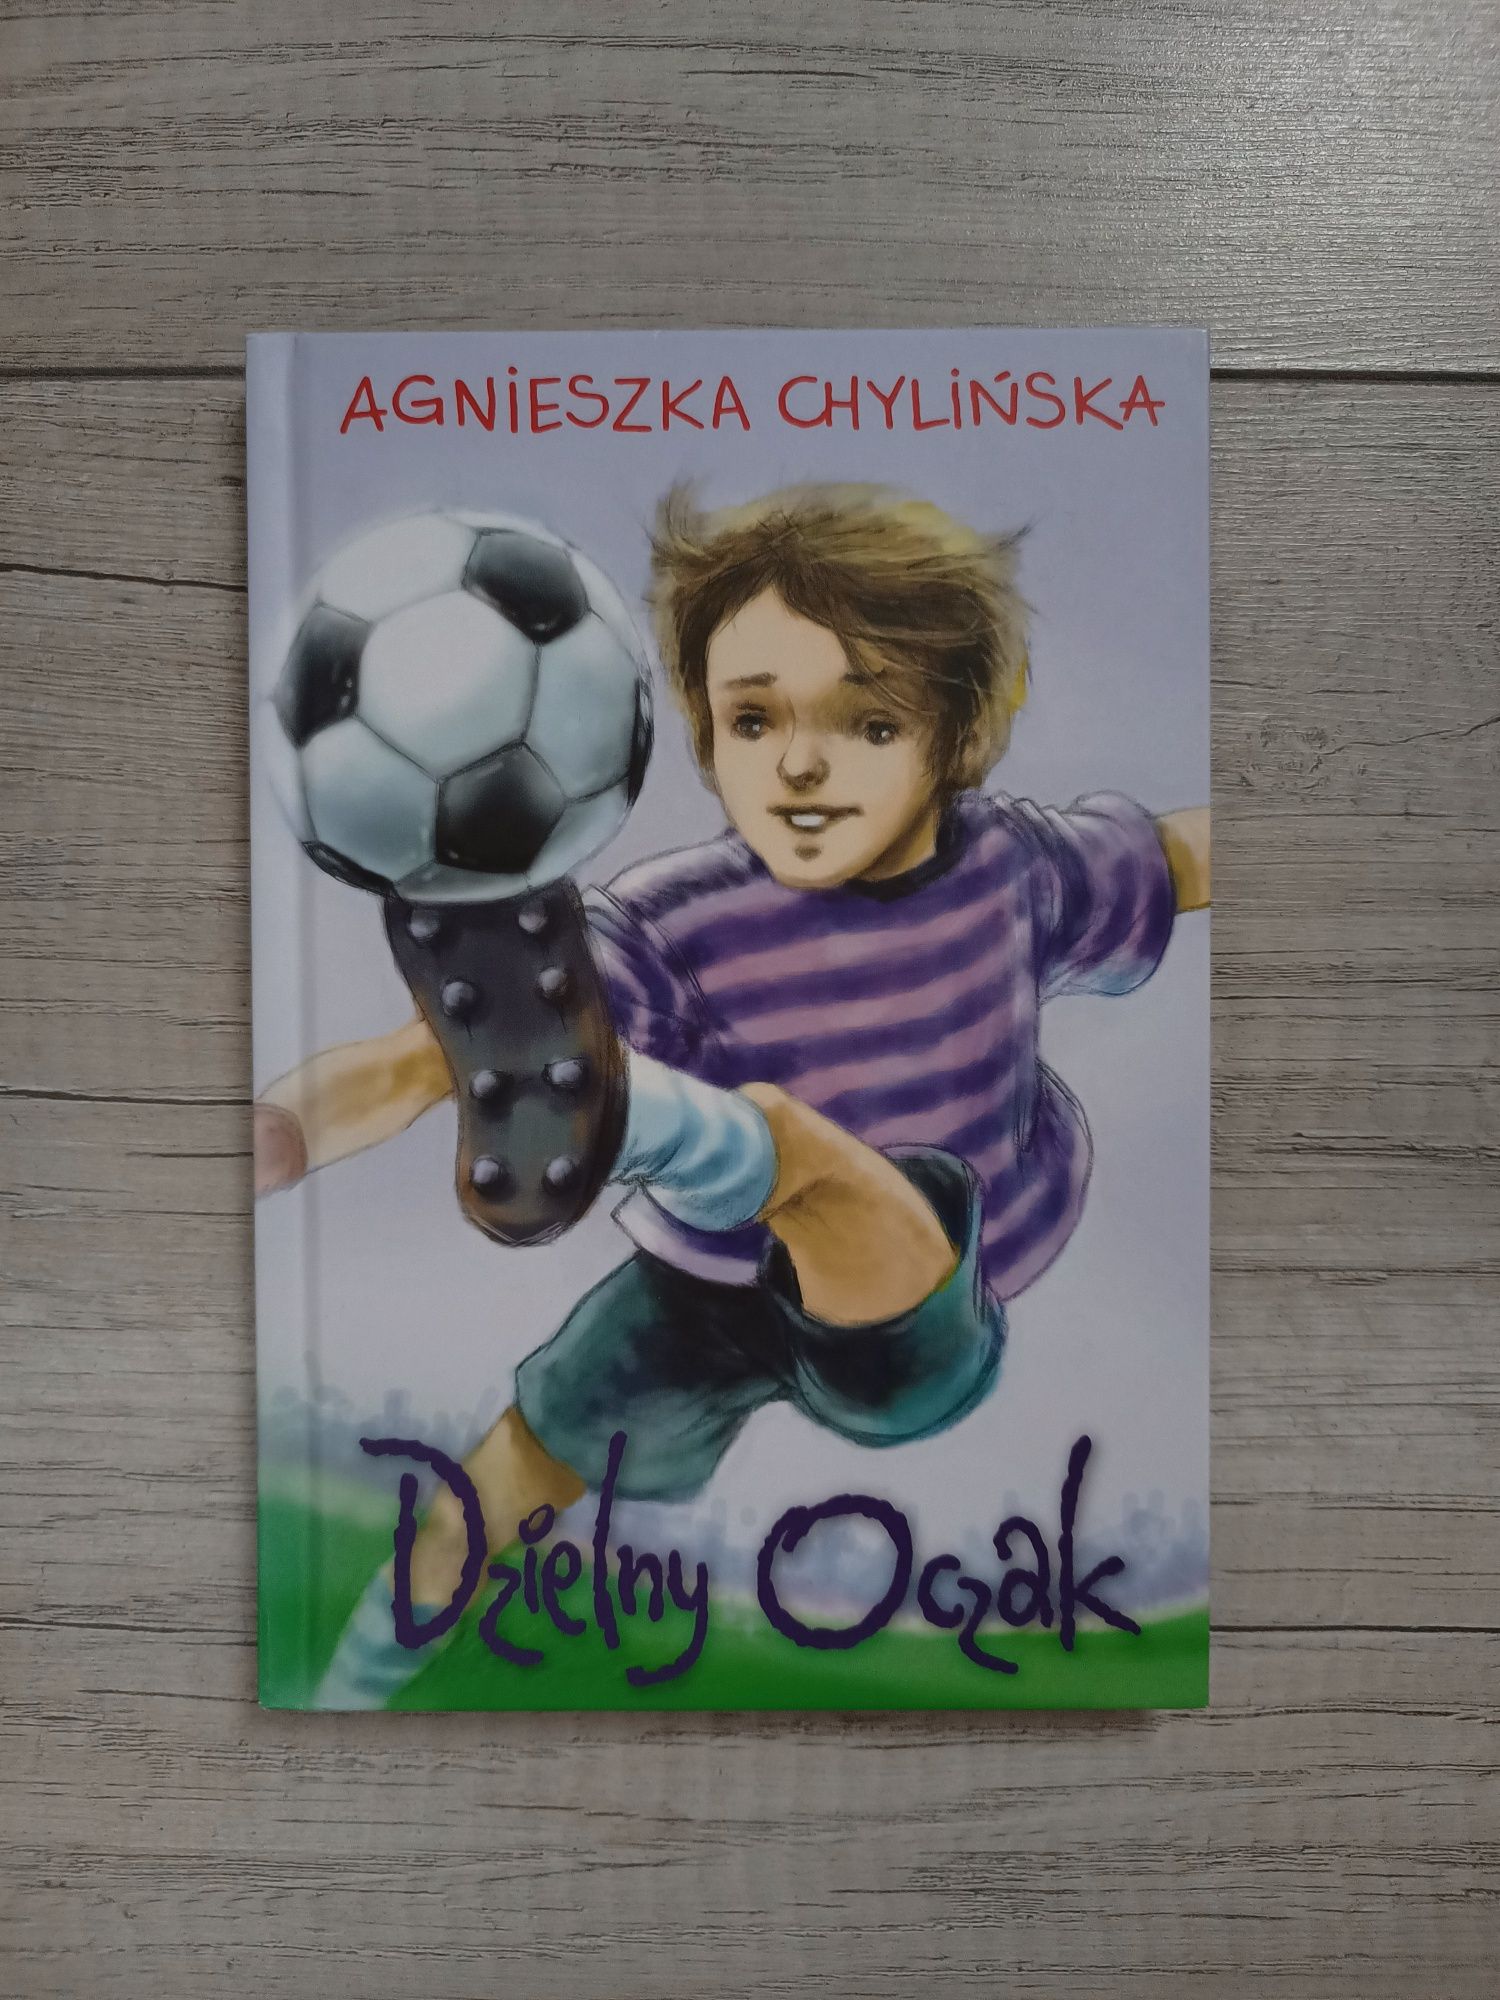 Nowa książka Agnieszka Chylińska Dzielny Oczak